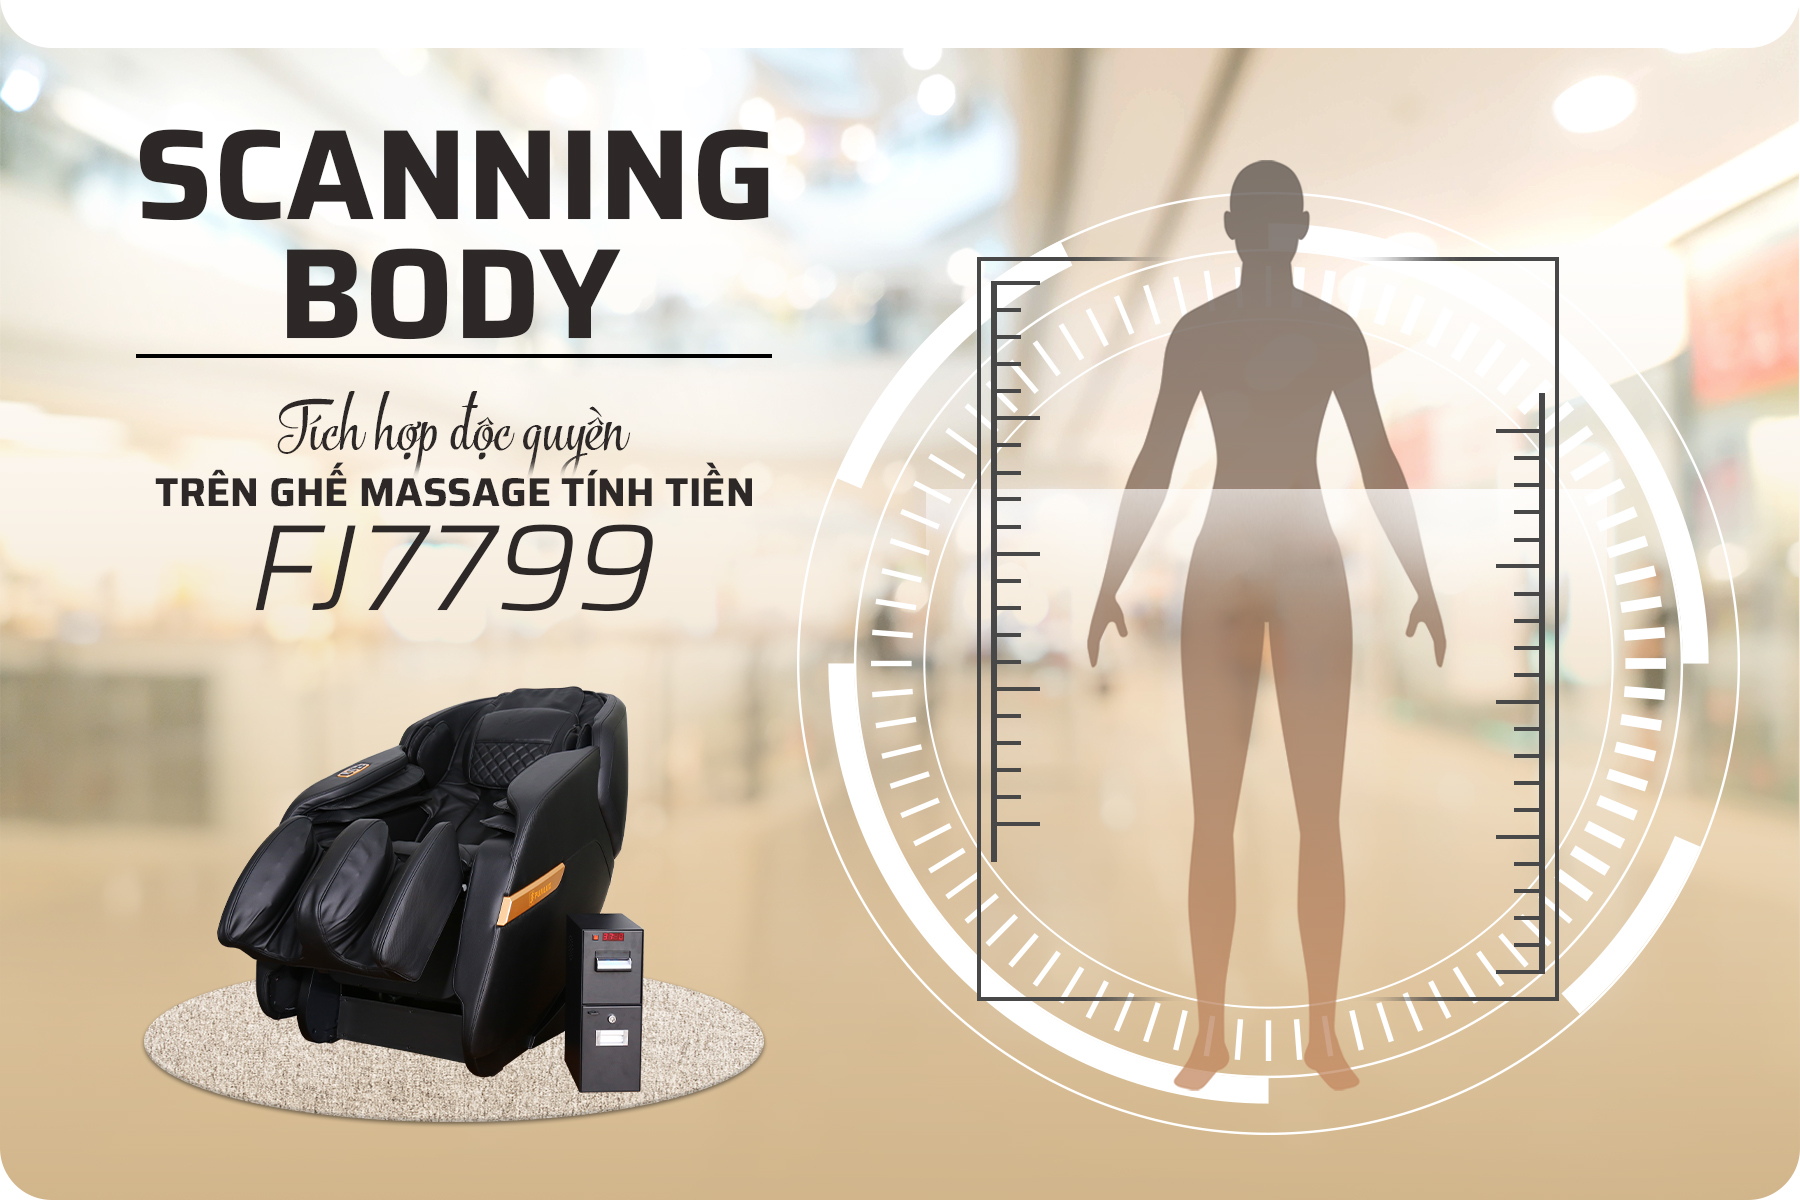 Chức năng Scanning body được tích hợp trên ghế massage FJ7799